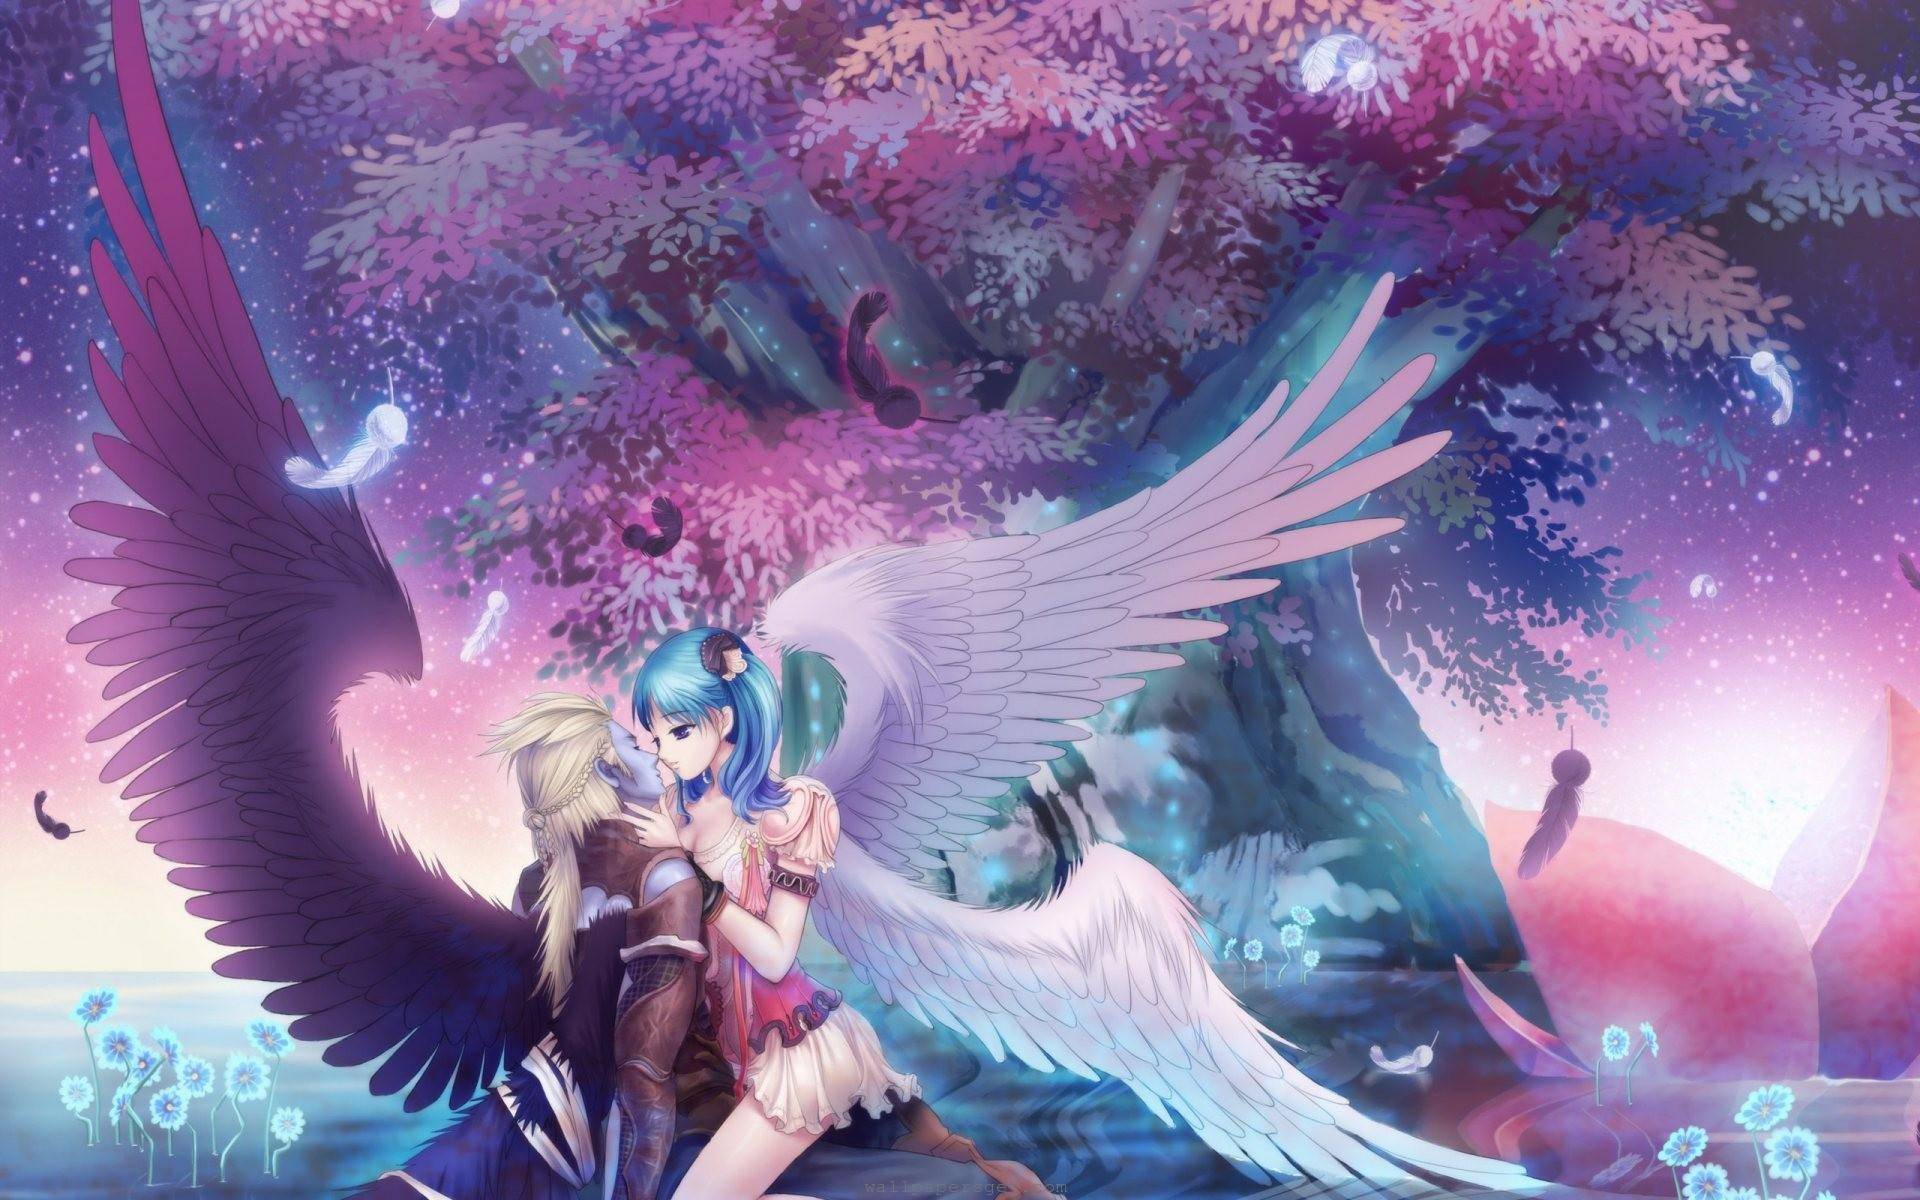 Stuffpoint Anime Manga Image Wallpaper Beautiful Angel Romance